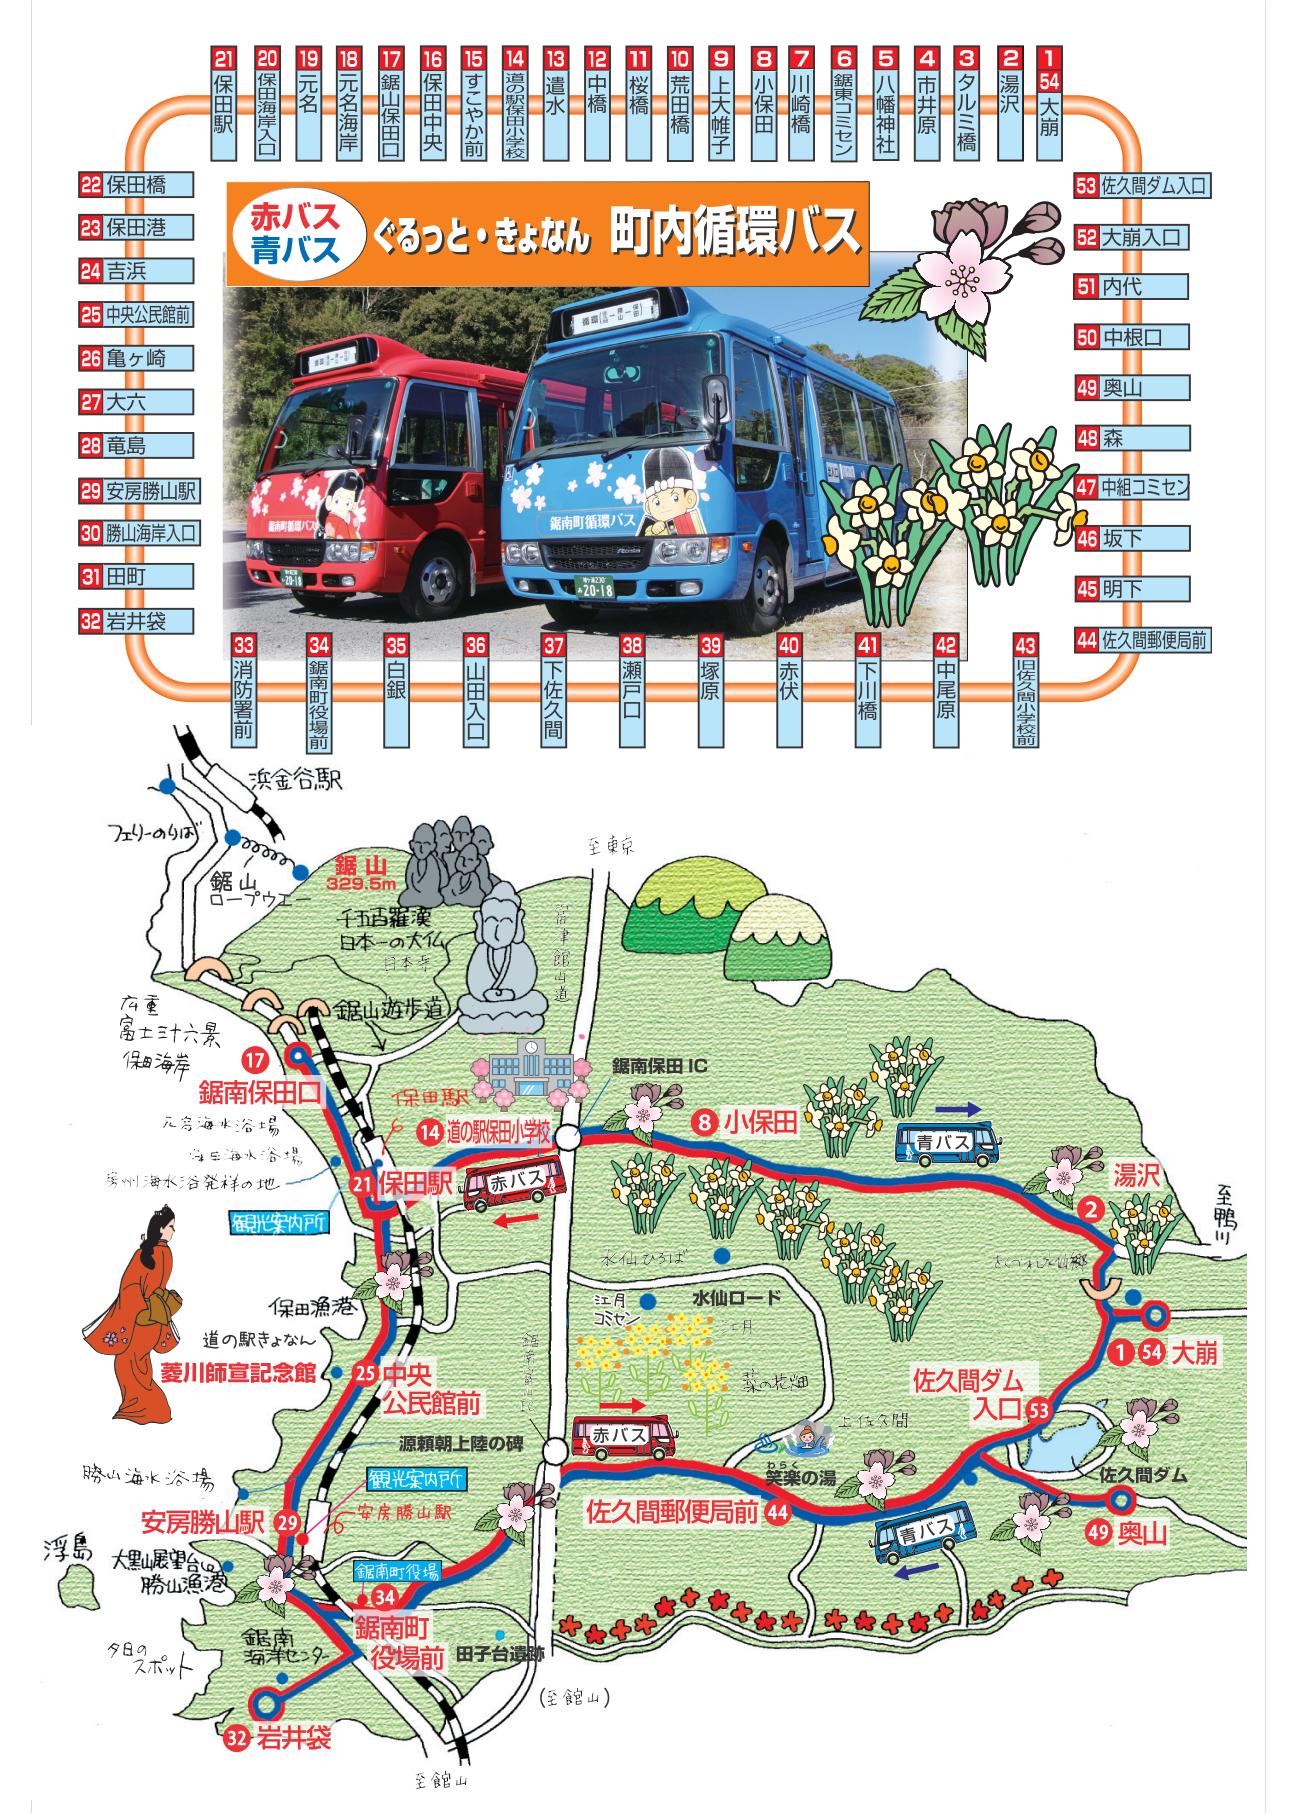 循環バス時刻表・ルートの画像2